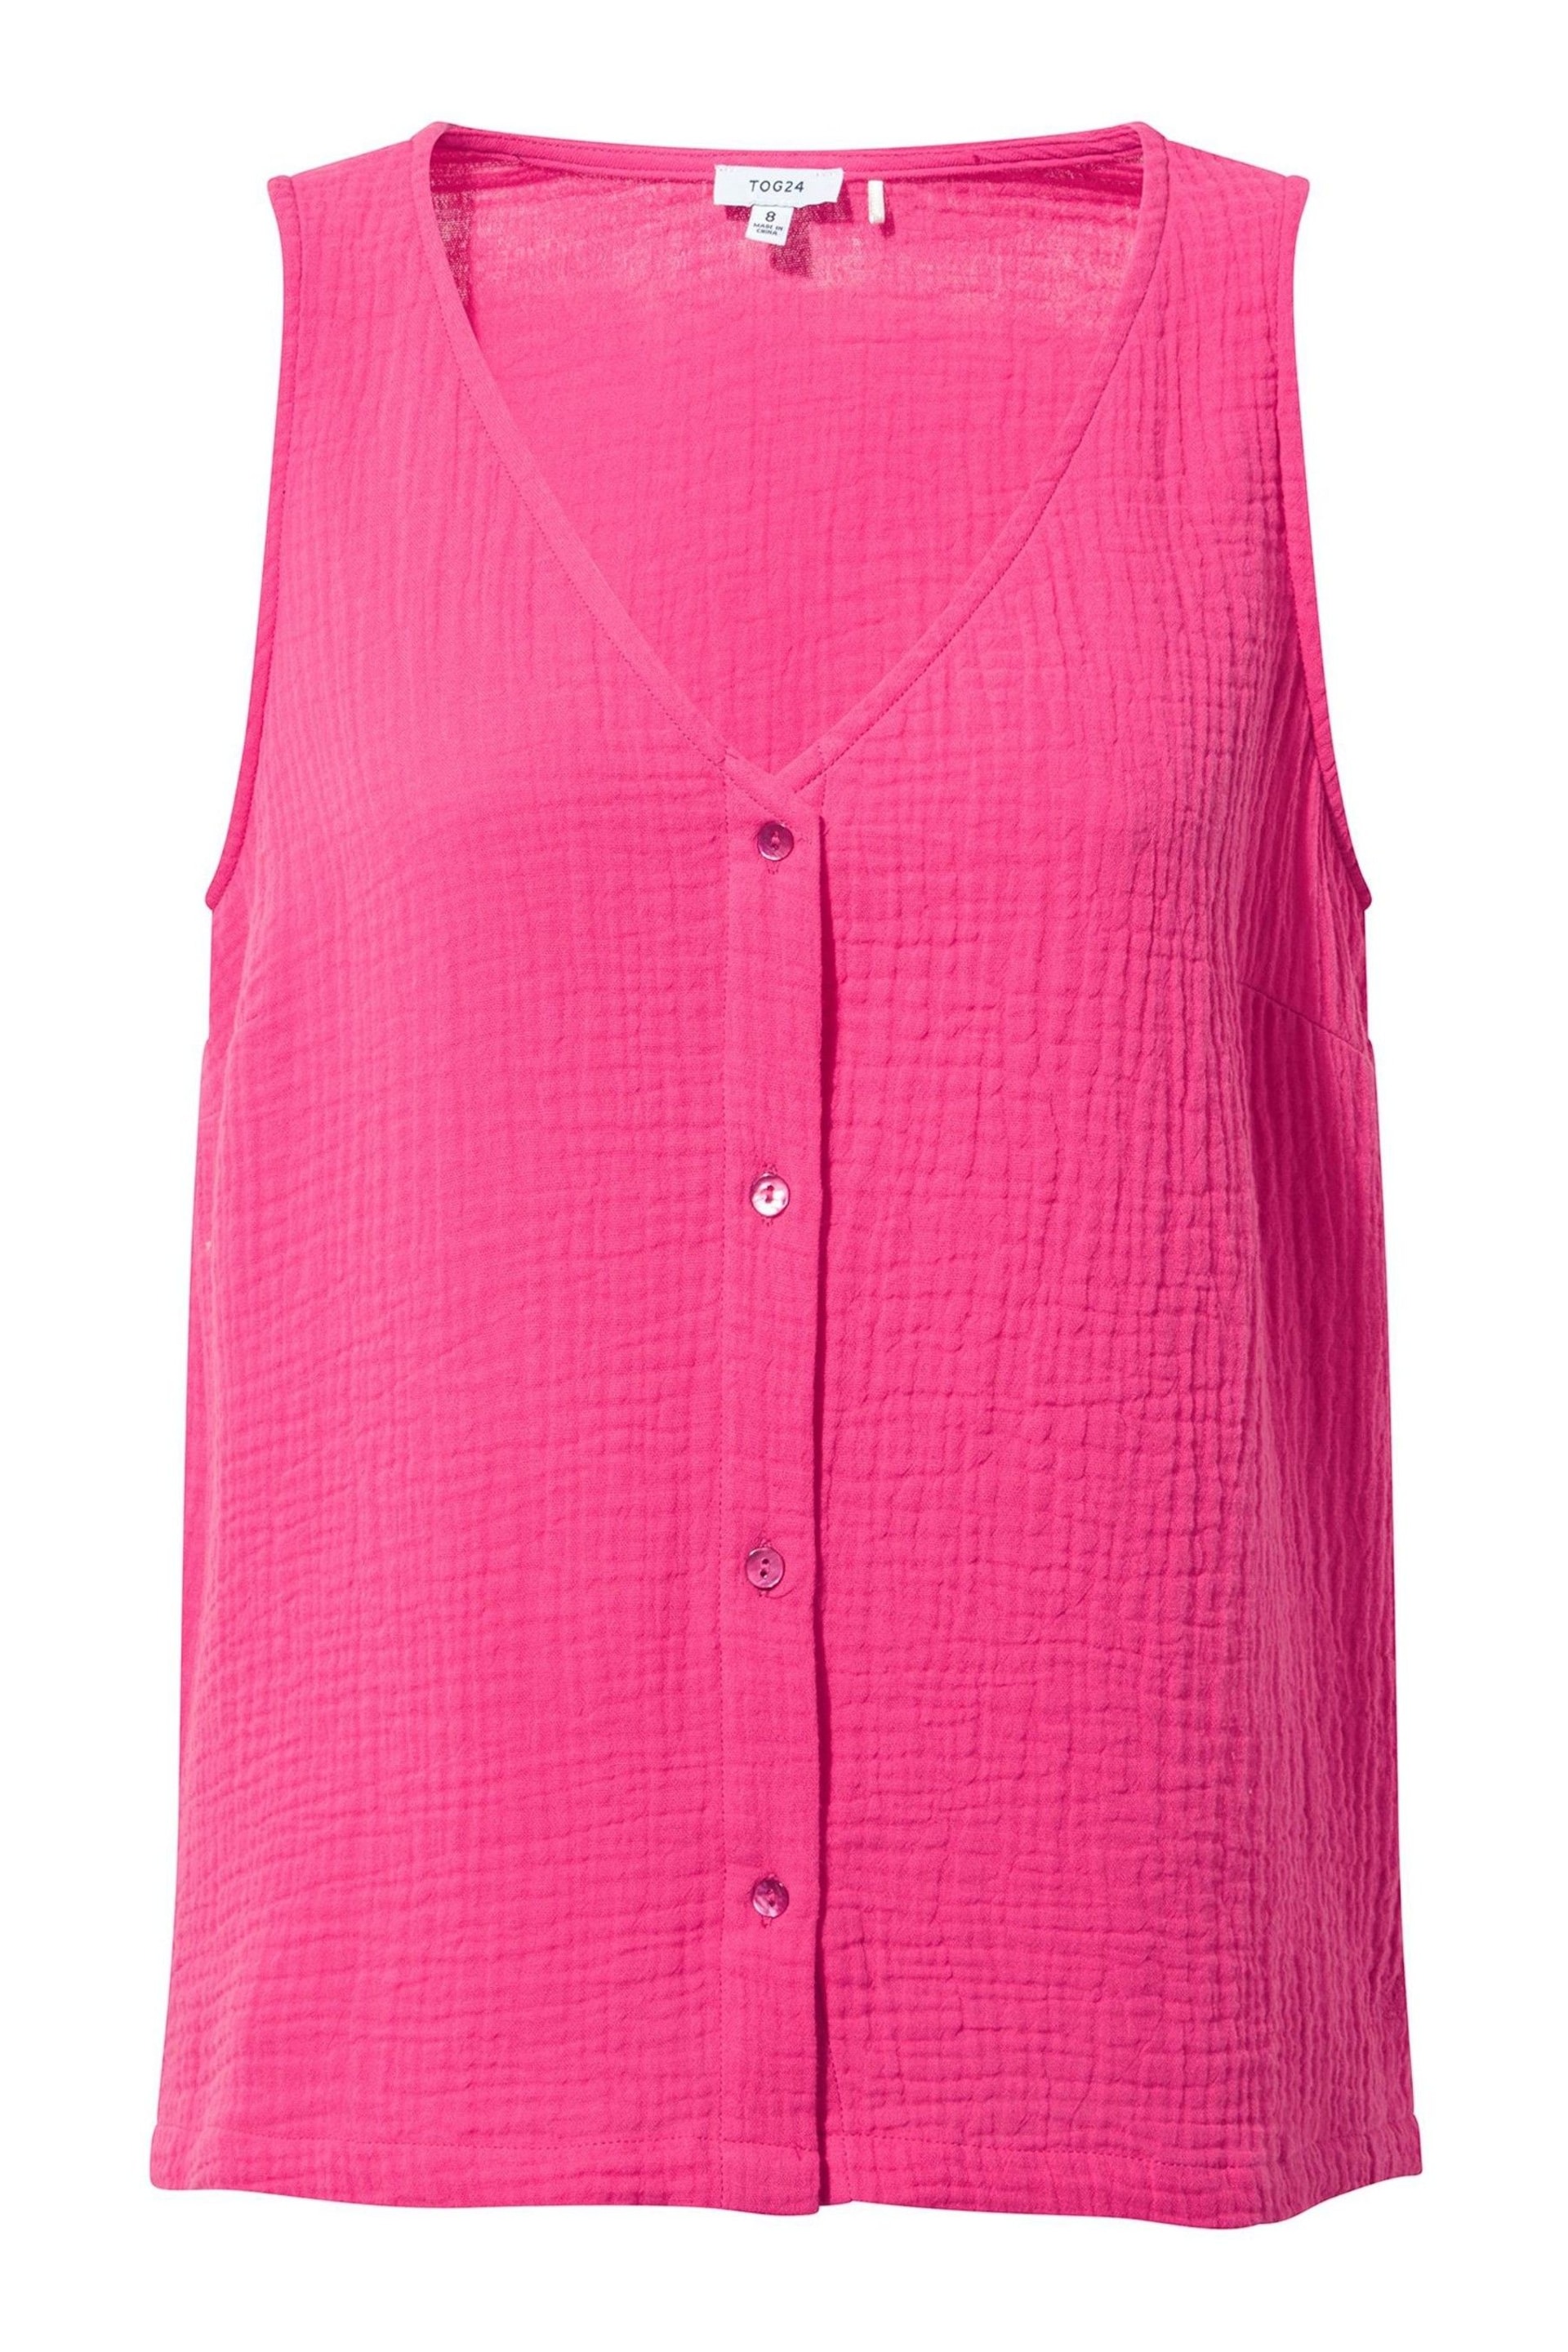 Tog 24 Pink Melissa Vest - Image 5 of 5